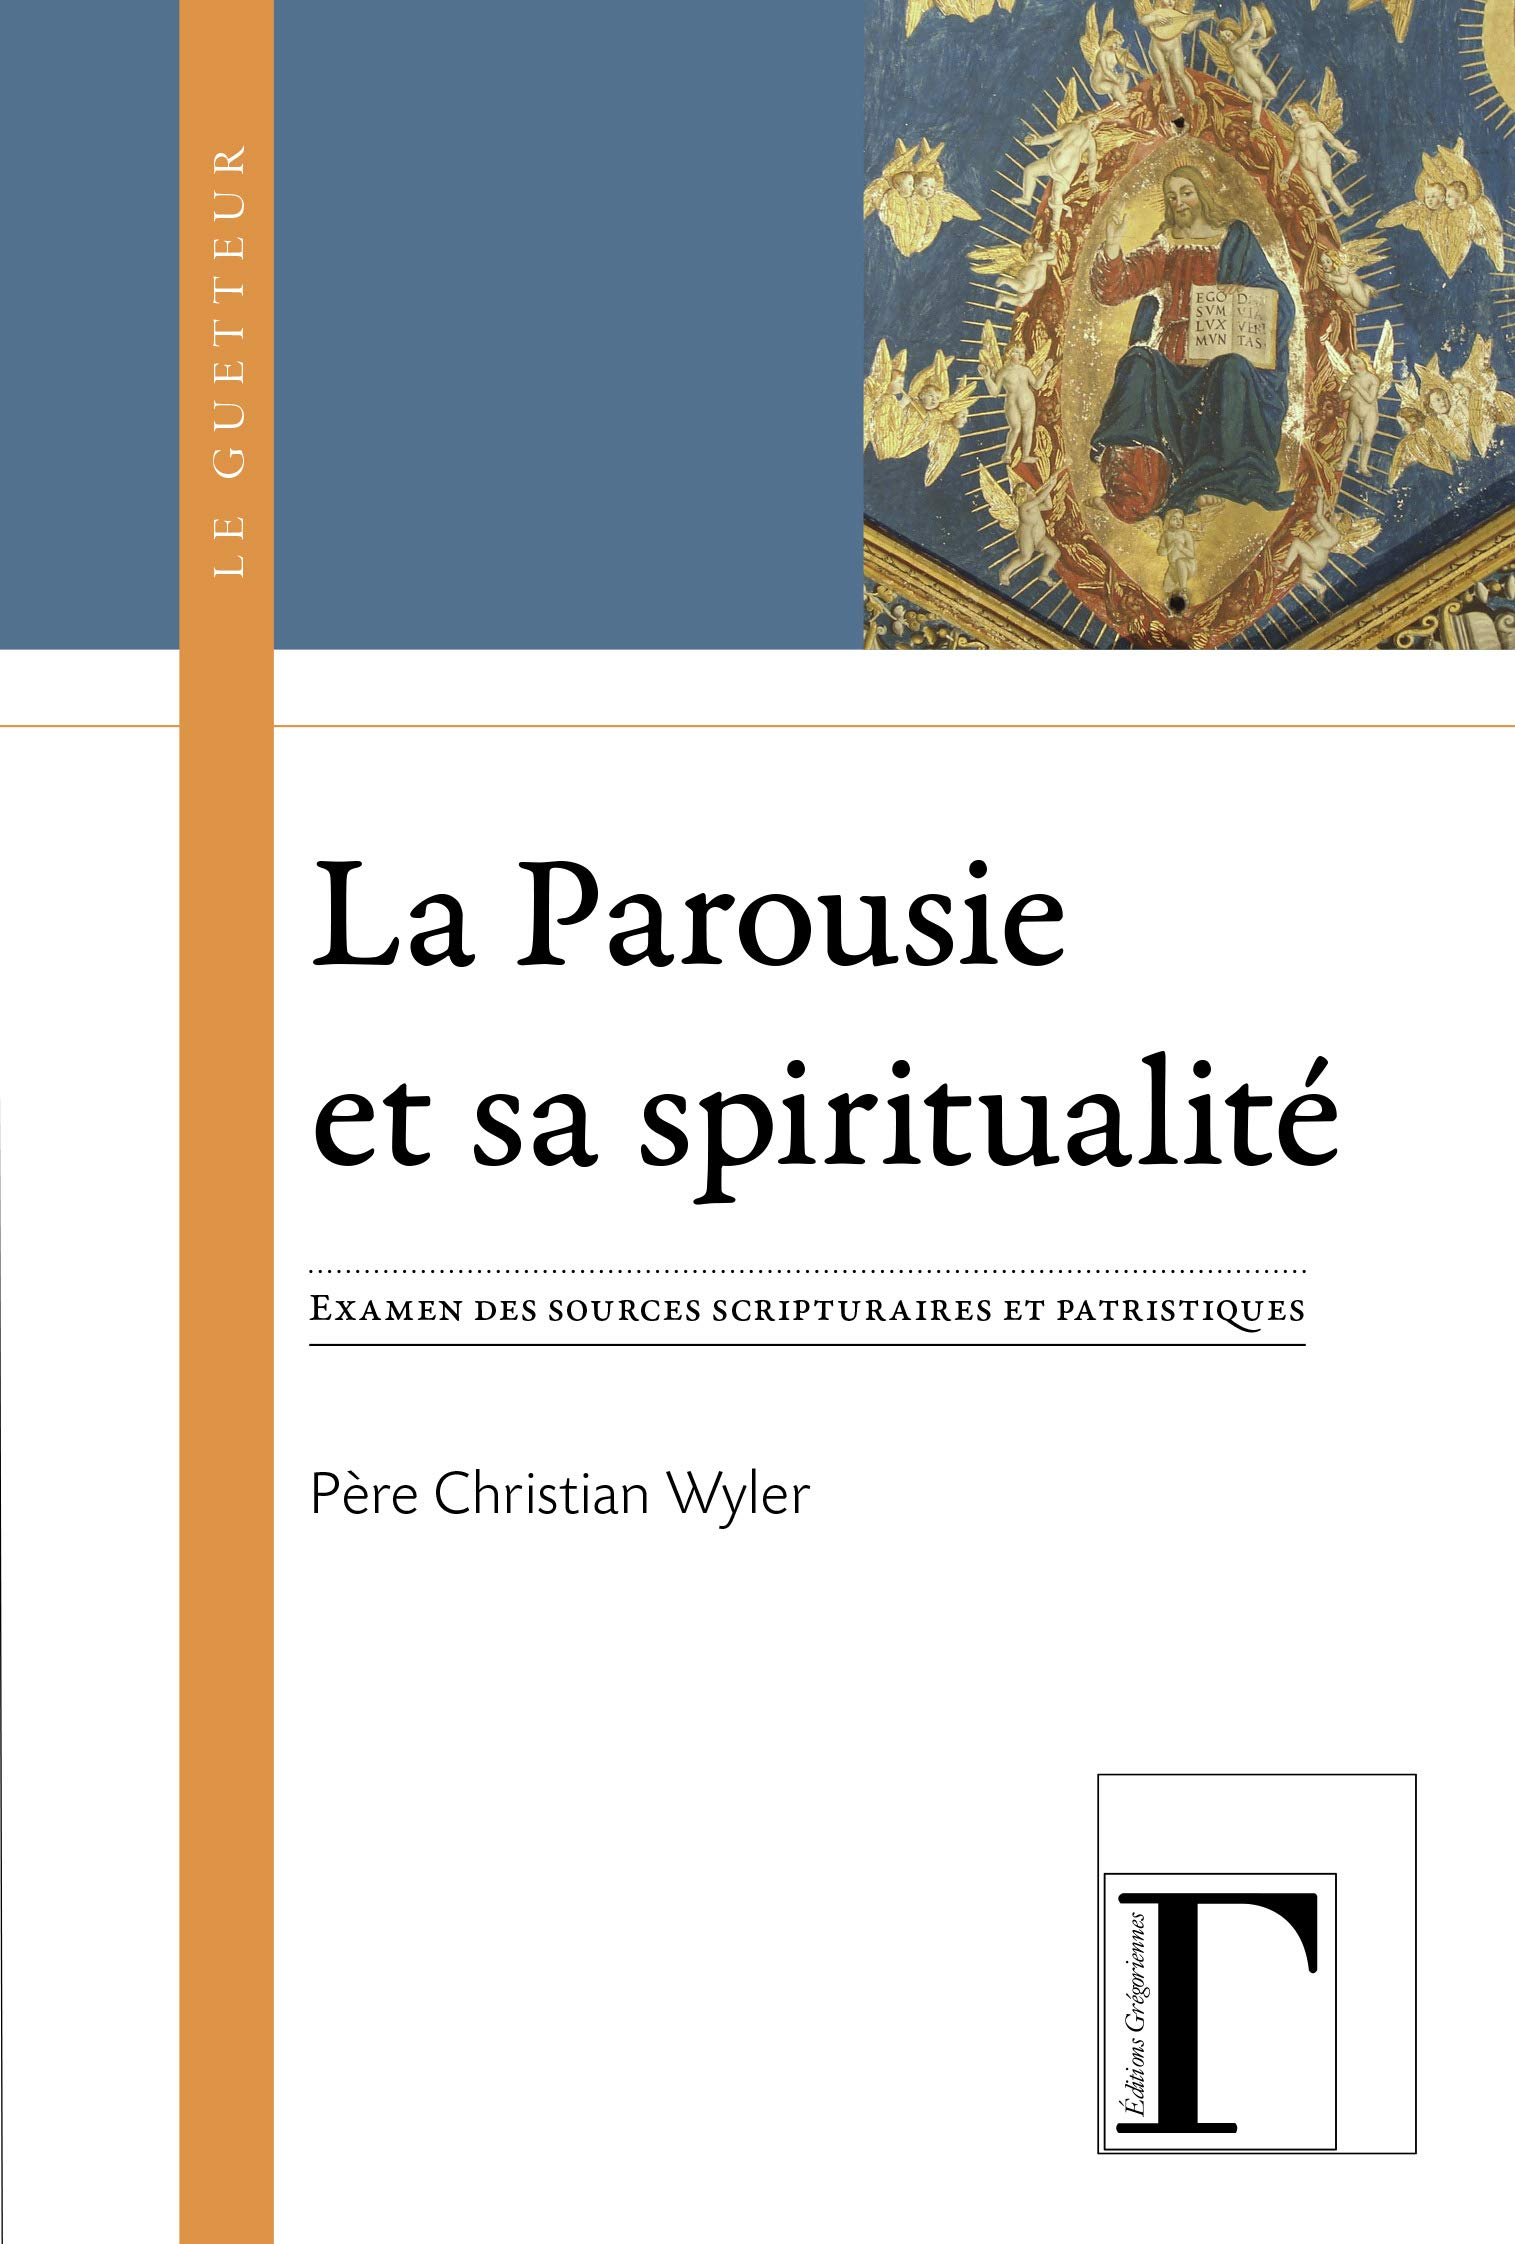 La parousie et sa spiritualité : examen des sources scripturaires et patristiques